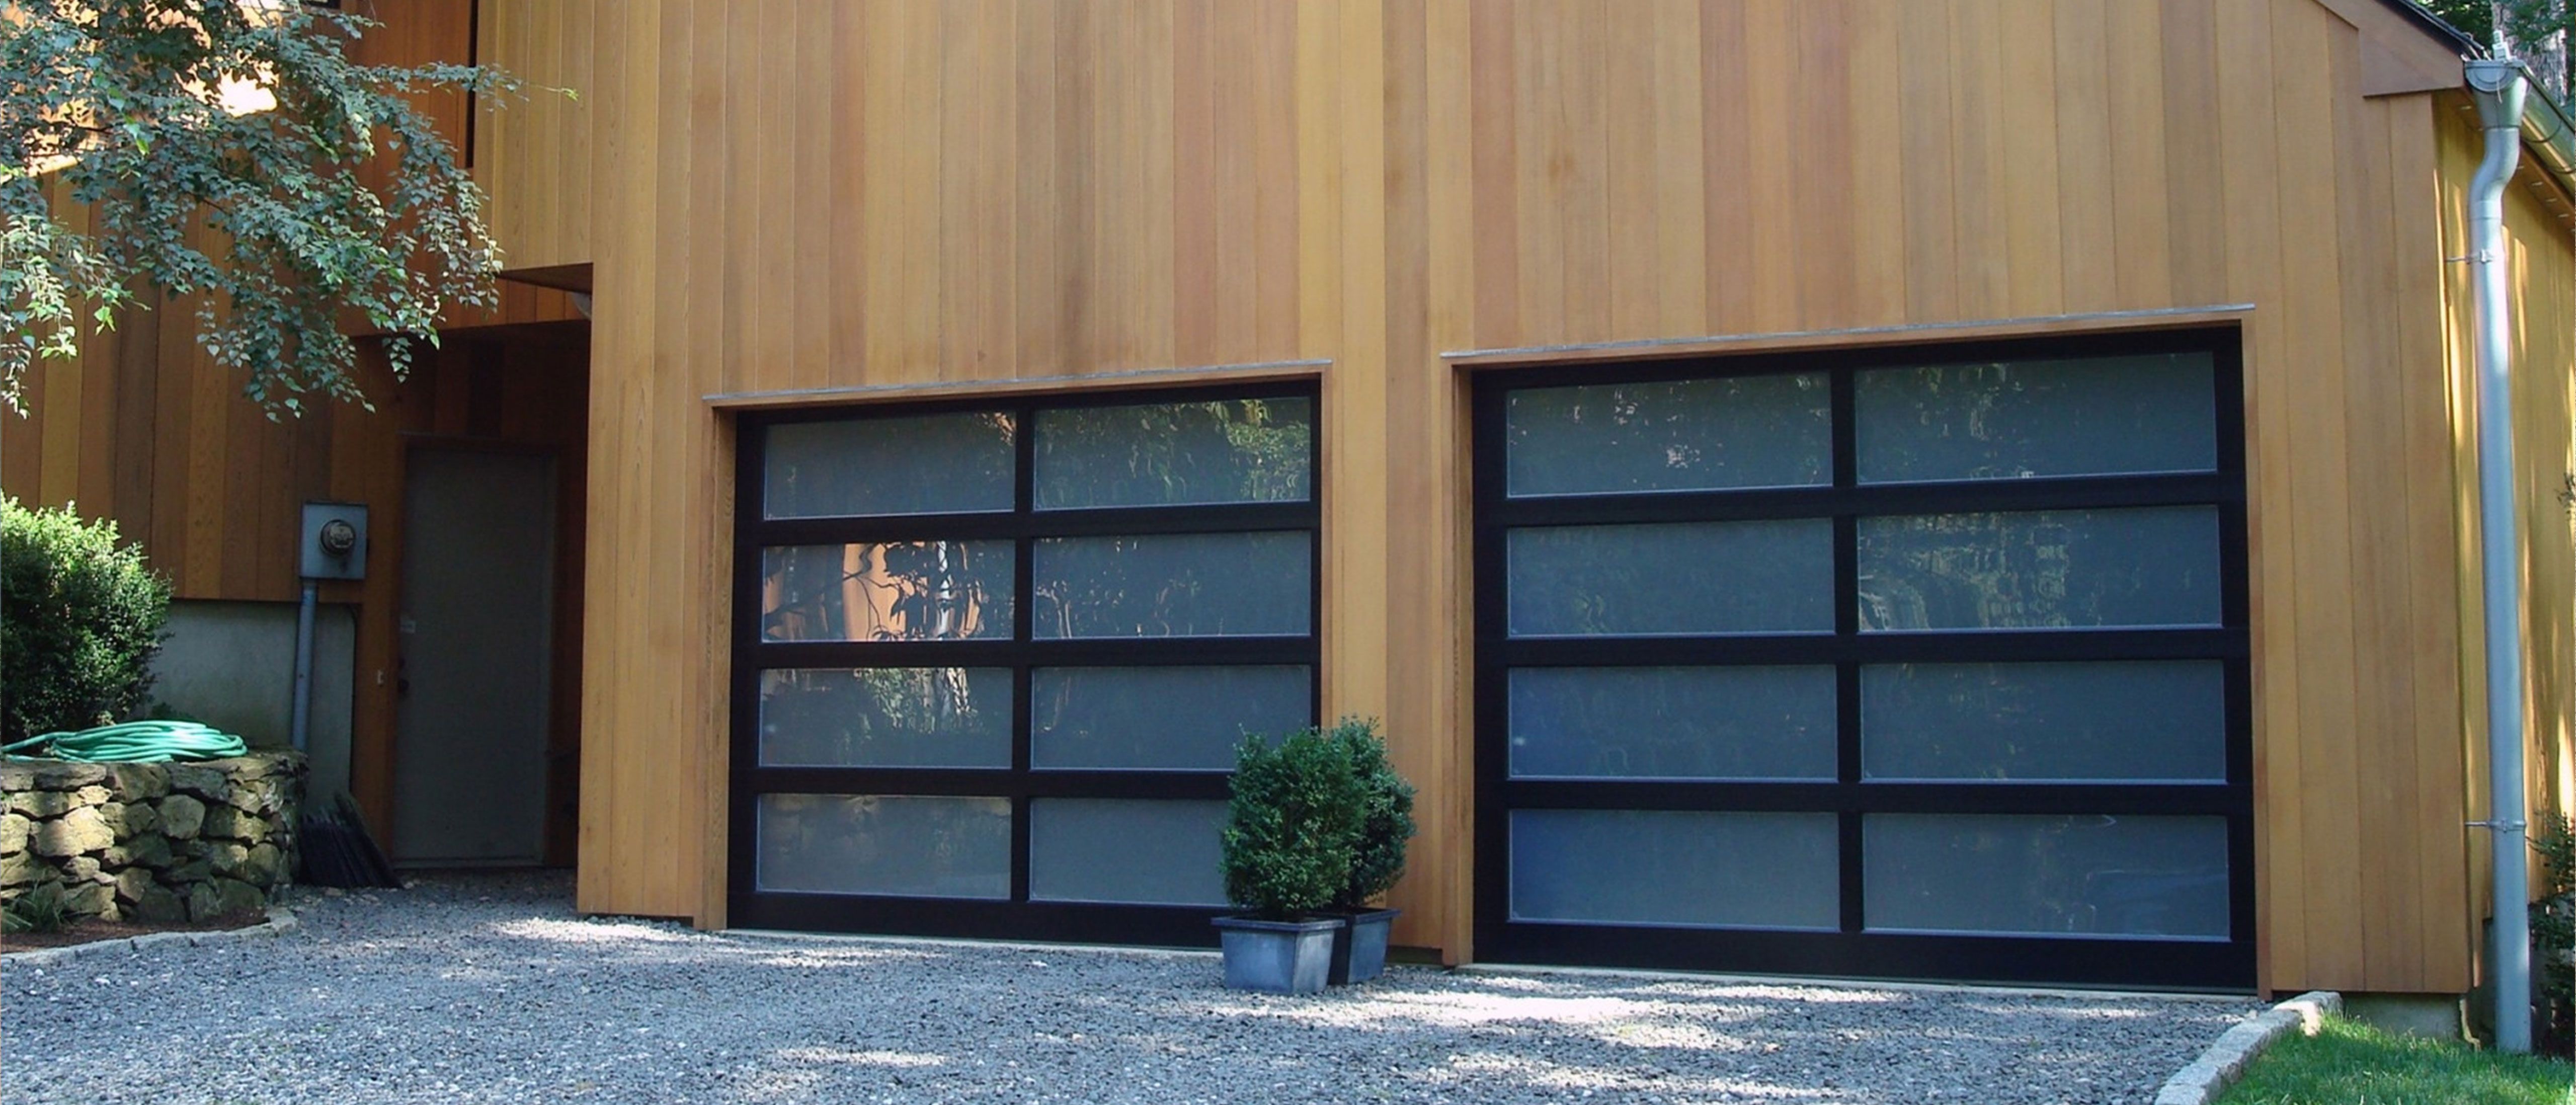 Porte Garage a Casteggio Passive House Installazione Preventivo Costo Casa Villa Villetta residenziali  industriali aziendali Porte tipo serrande  